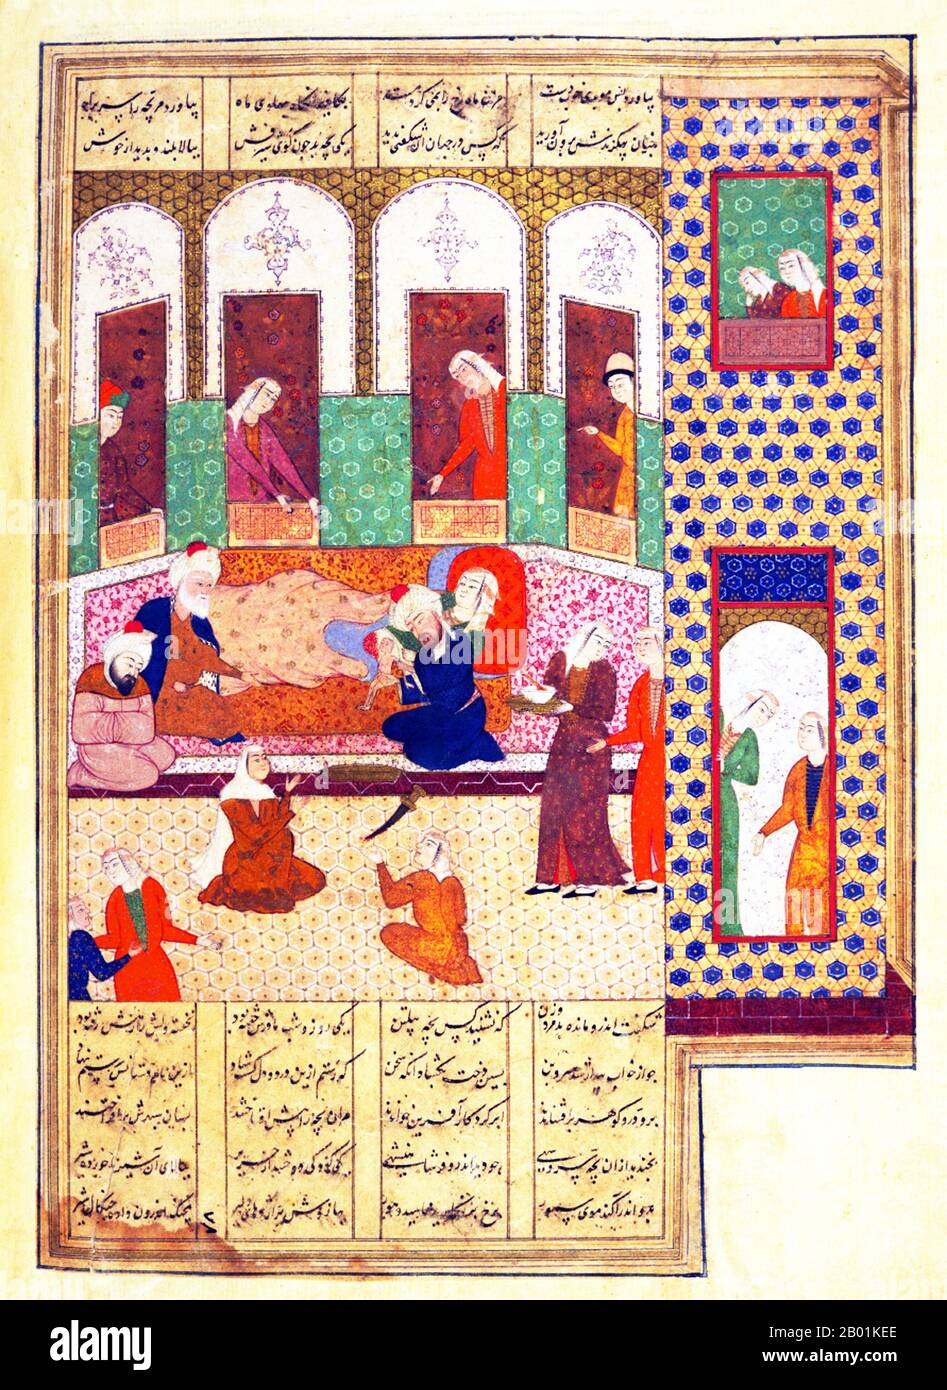 Iran/Persien: Rudaba bringt Rostam zur Welt, der zu einem der größten persischen Helden werden wird. Miniaturmalerei aus der Schahnameh-Zeit (1370-1507). Das Shahnameh oder Shah-nama (Šāhnāmeh, „das Buch der Könige“) ist ein langes episches Gedicht, das der persische Dichter Ferdowsi zwischen 977 und 1010 n. Chr. geschrieben hat und das nationale Epos des Iran und verwandter perso-iranischer Kulturen ist. Der Schahnameh besteht aus etwa 60.000 Versen und erzählt die mythische und in gewissem Maße die historische Vergangenheit des Großirans von der Erschaffung der Welt bis zur islamischen Eroberung Persiens im 7. Jahrhundert. Stockfoto